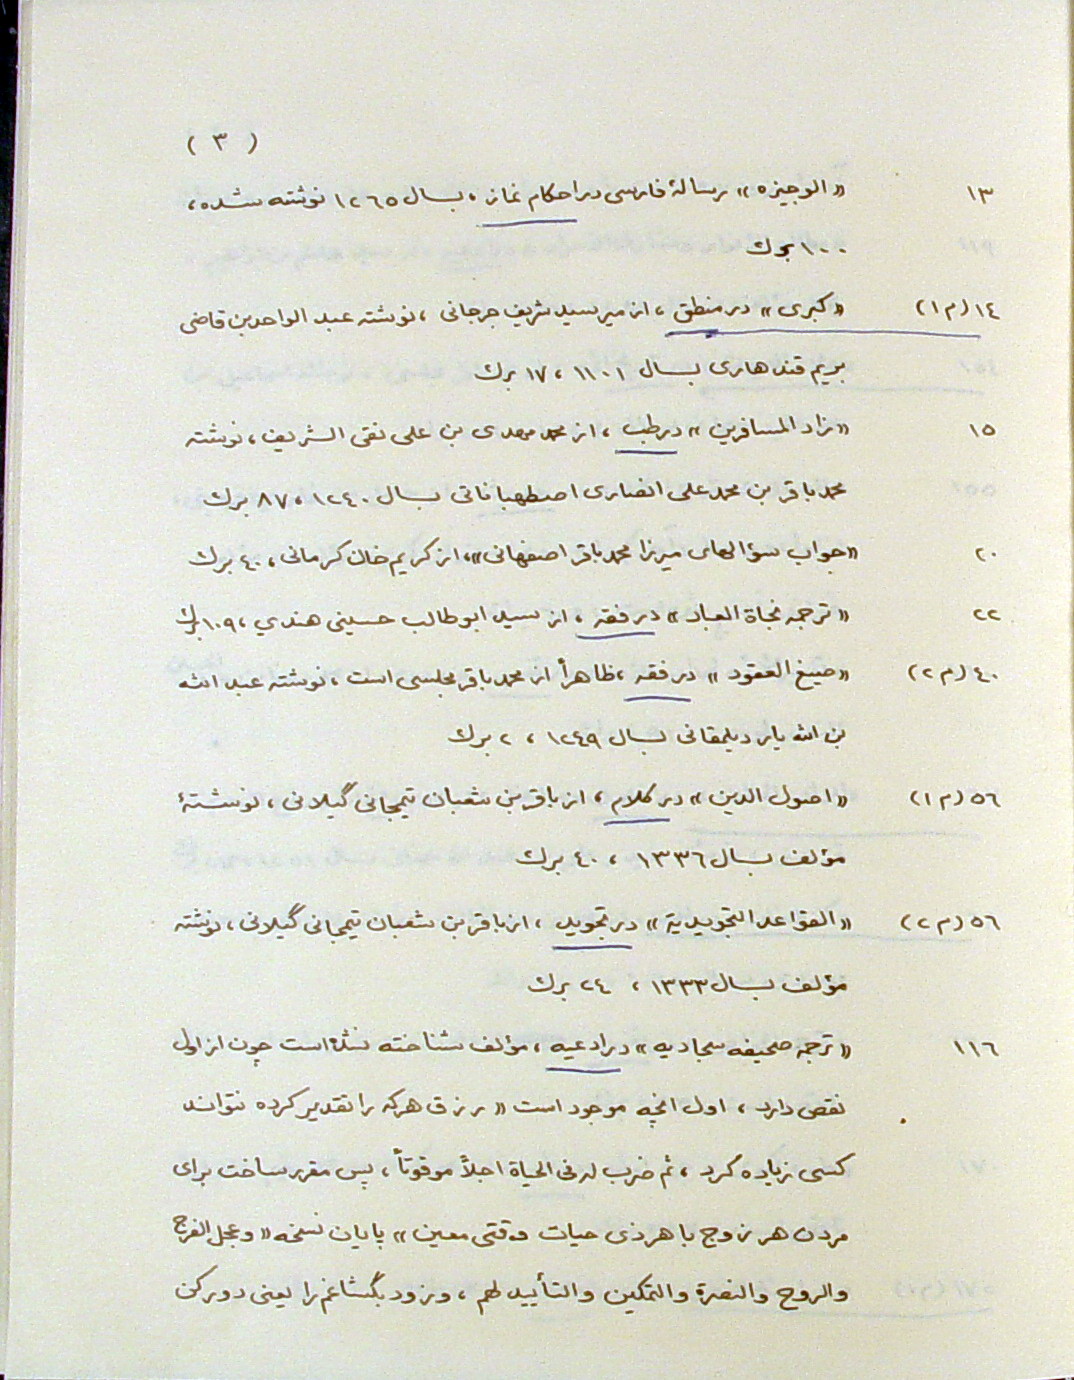 فهرست نسخه های فارسی کتابخانه حکیم